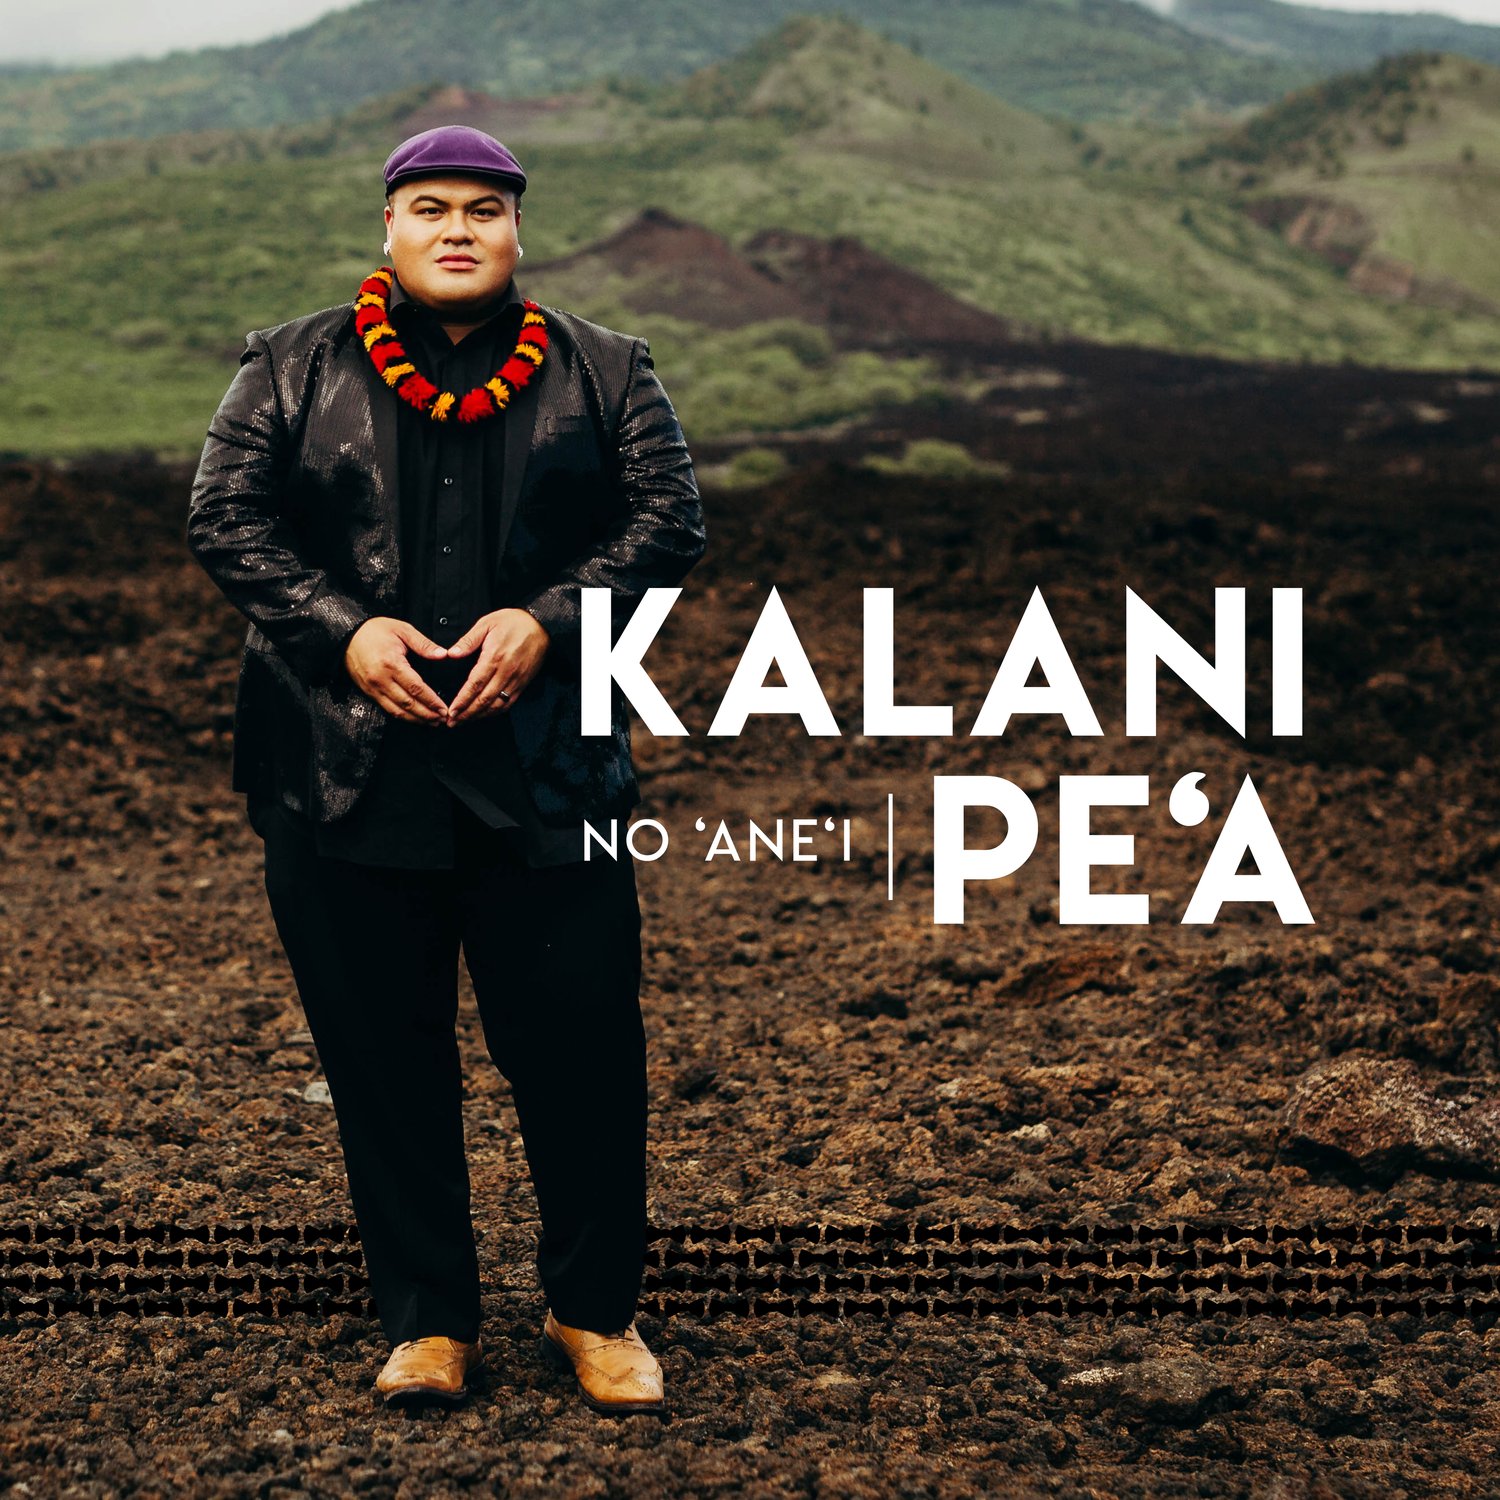 Image of Kalani Pe'a - No 'Ane'i CD